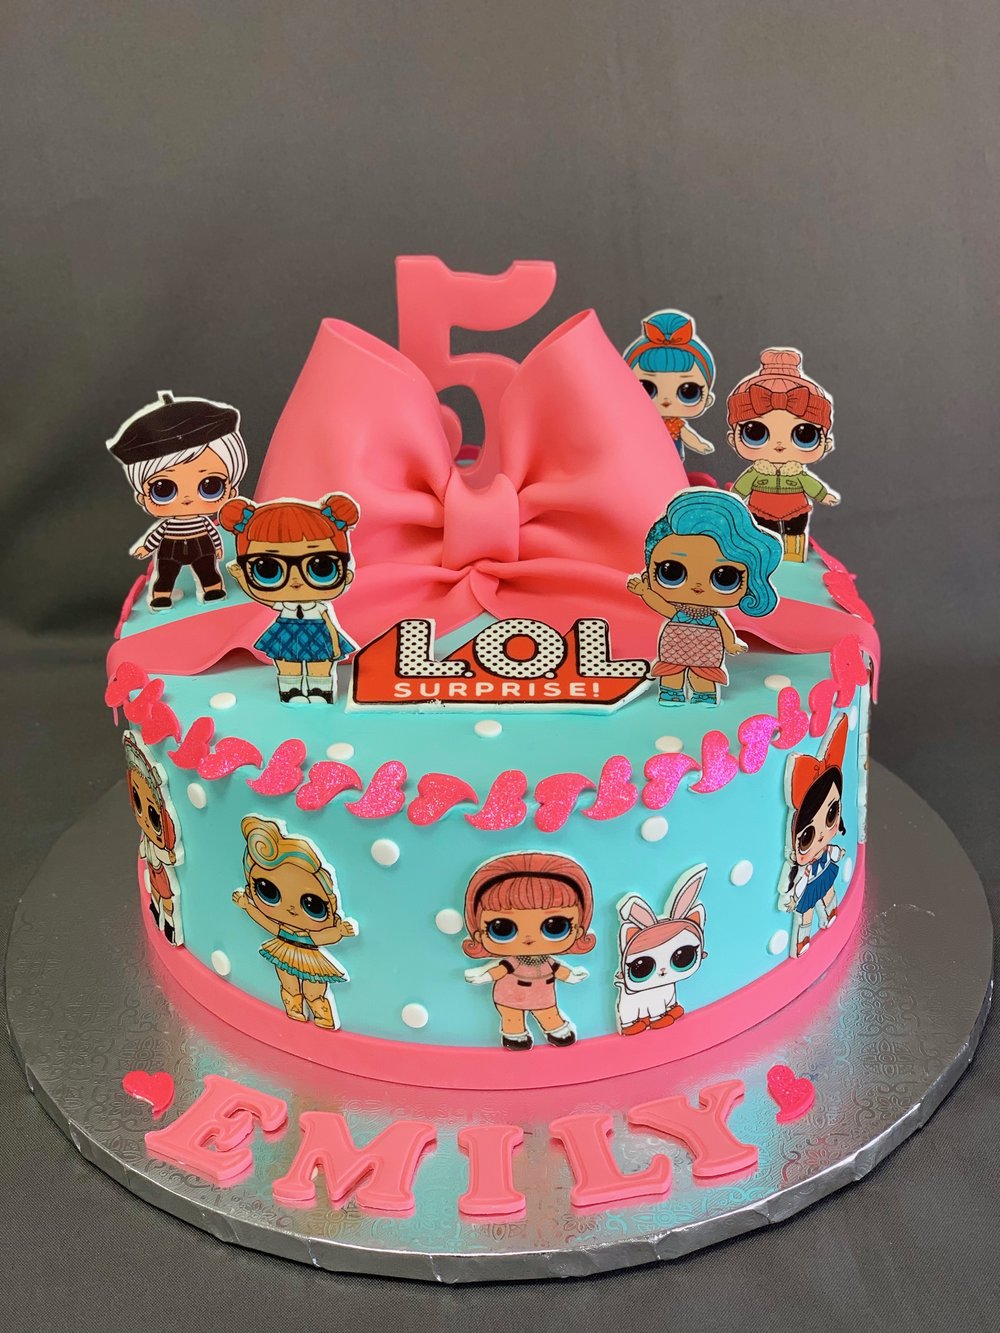 Lol Dolls Birthday Cake Skazka Desserts Bakery Nj Custom Birthday Cakes Cupcakes Shop